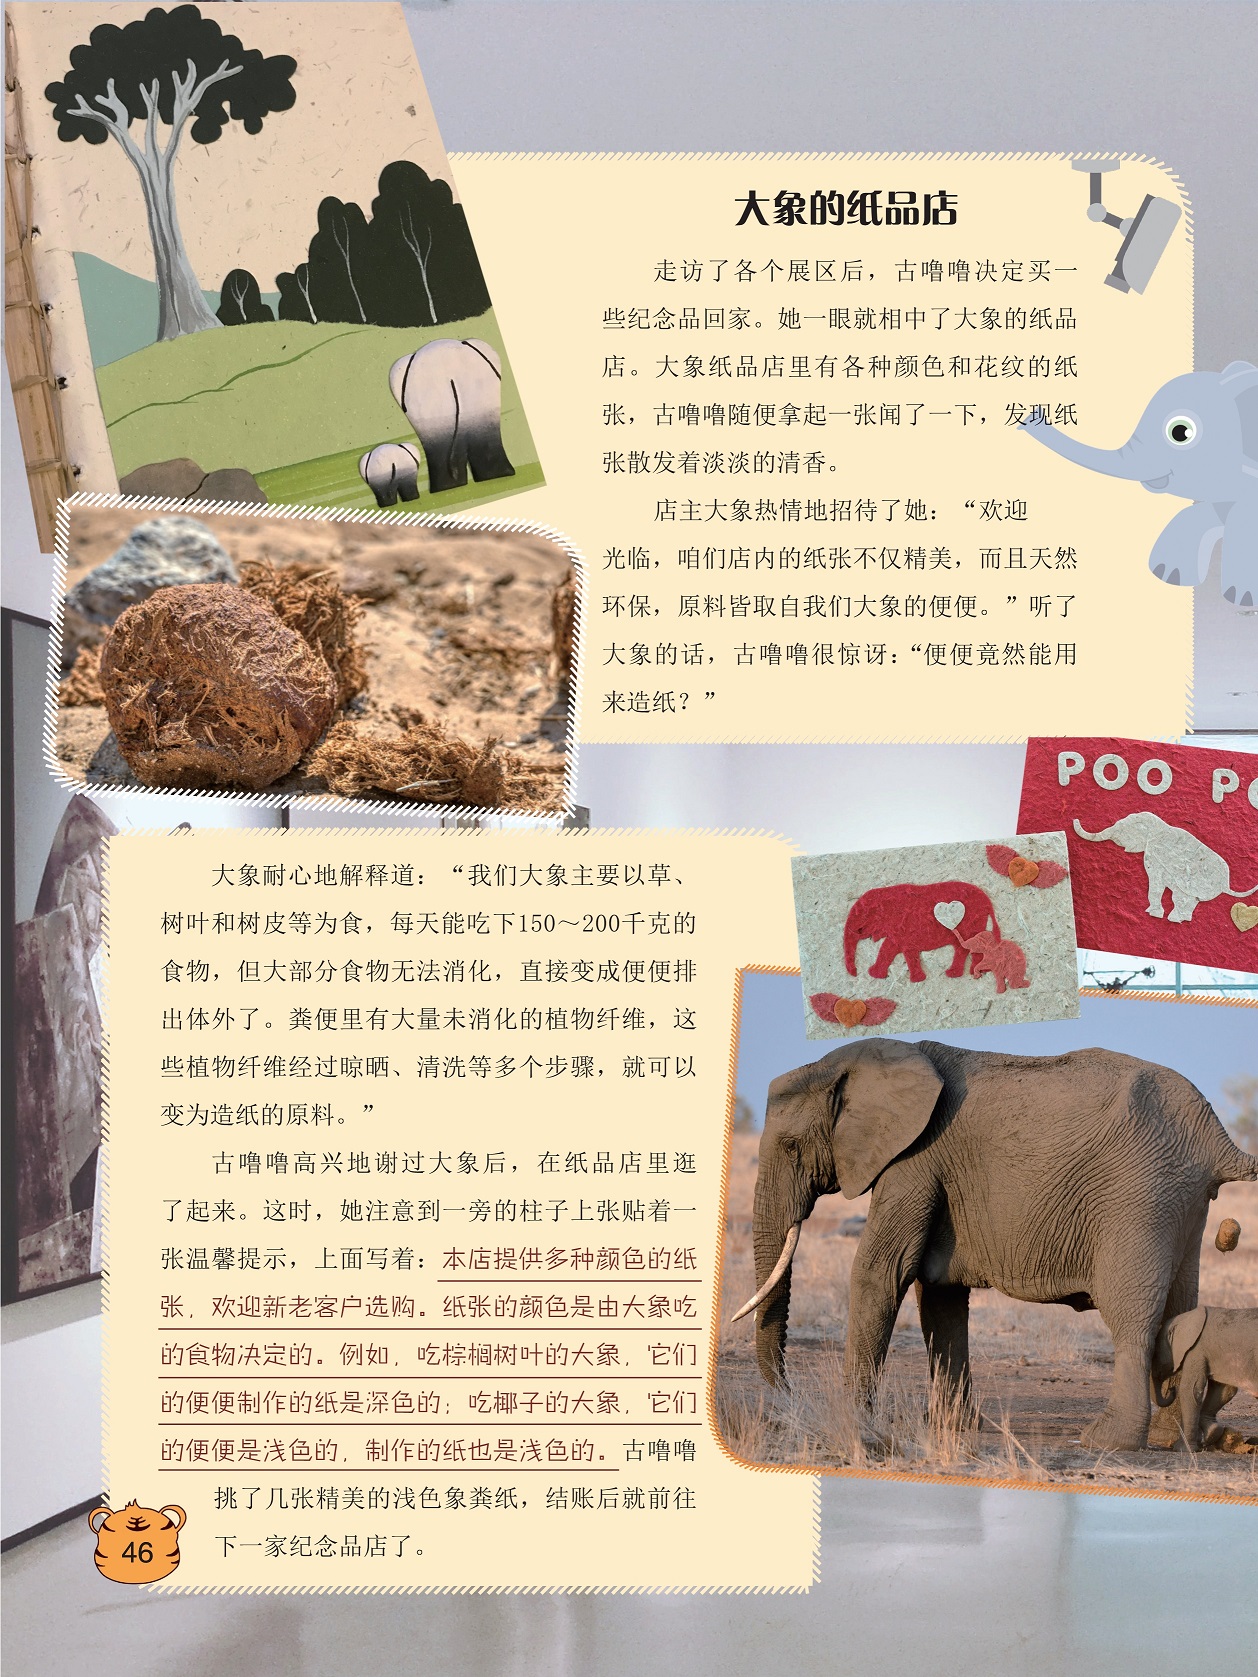 大象粪便里有大量未消化的植物纤维,大象的纸品店